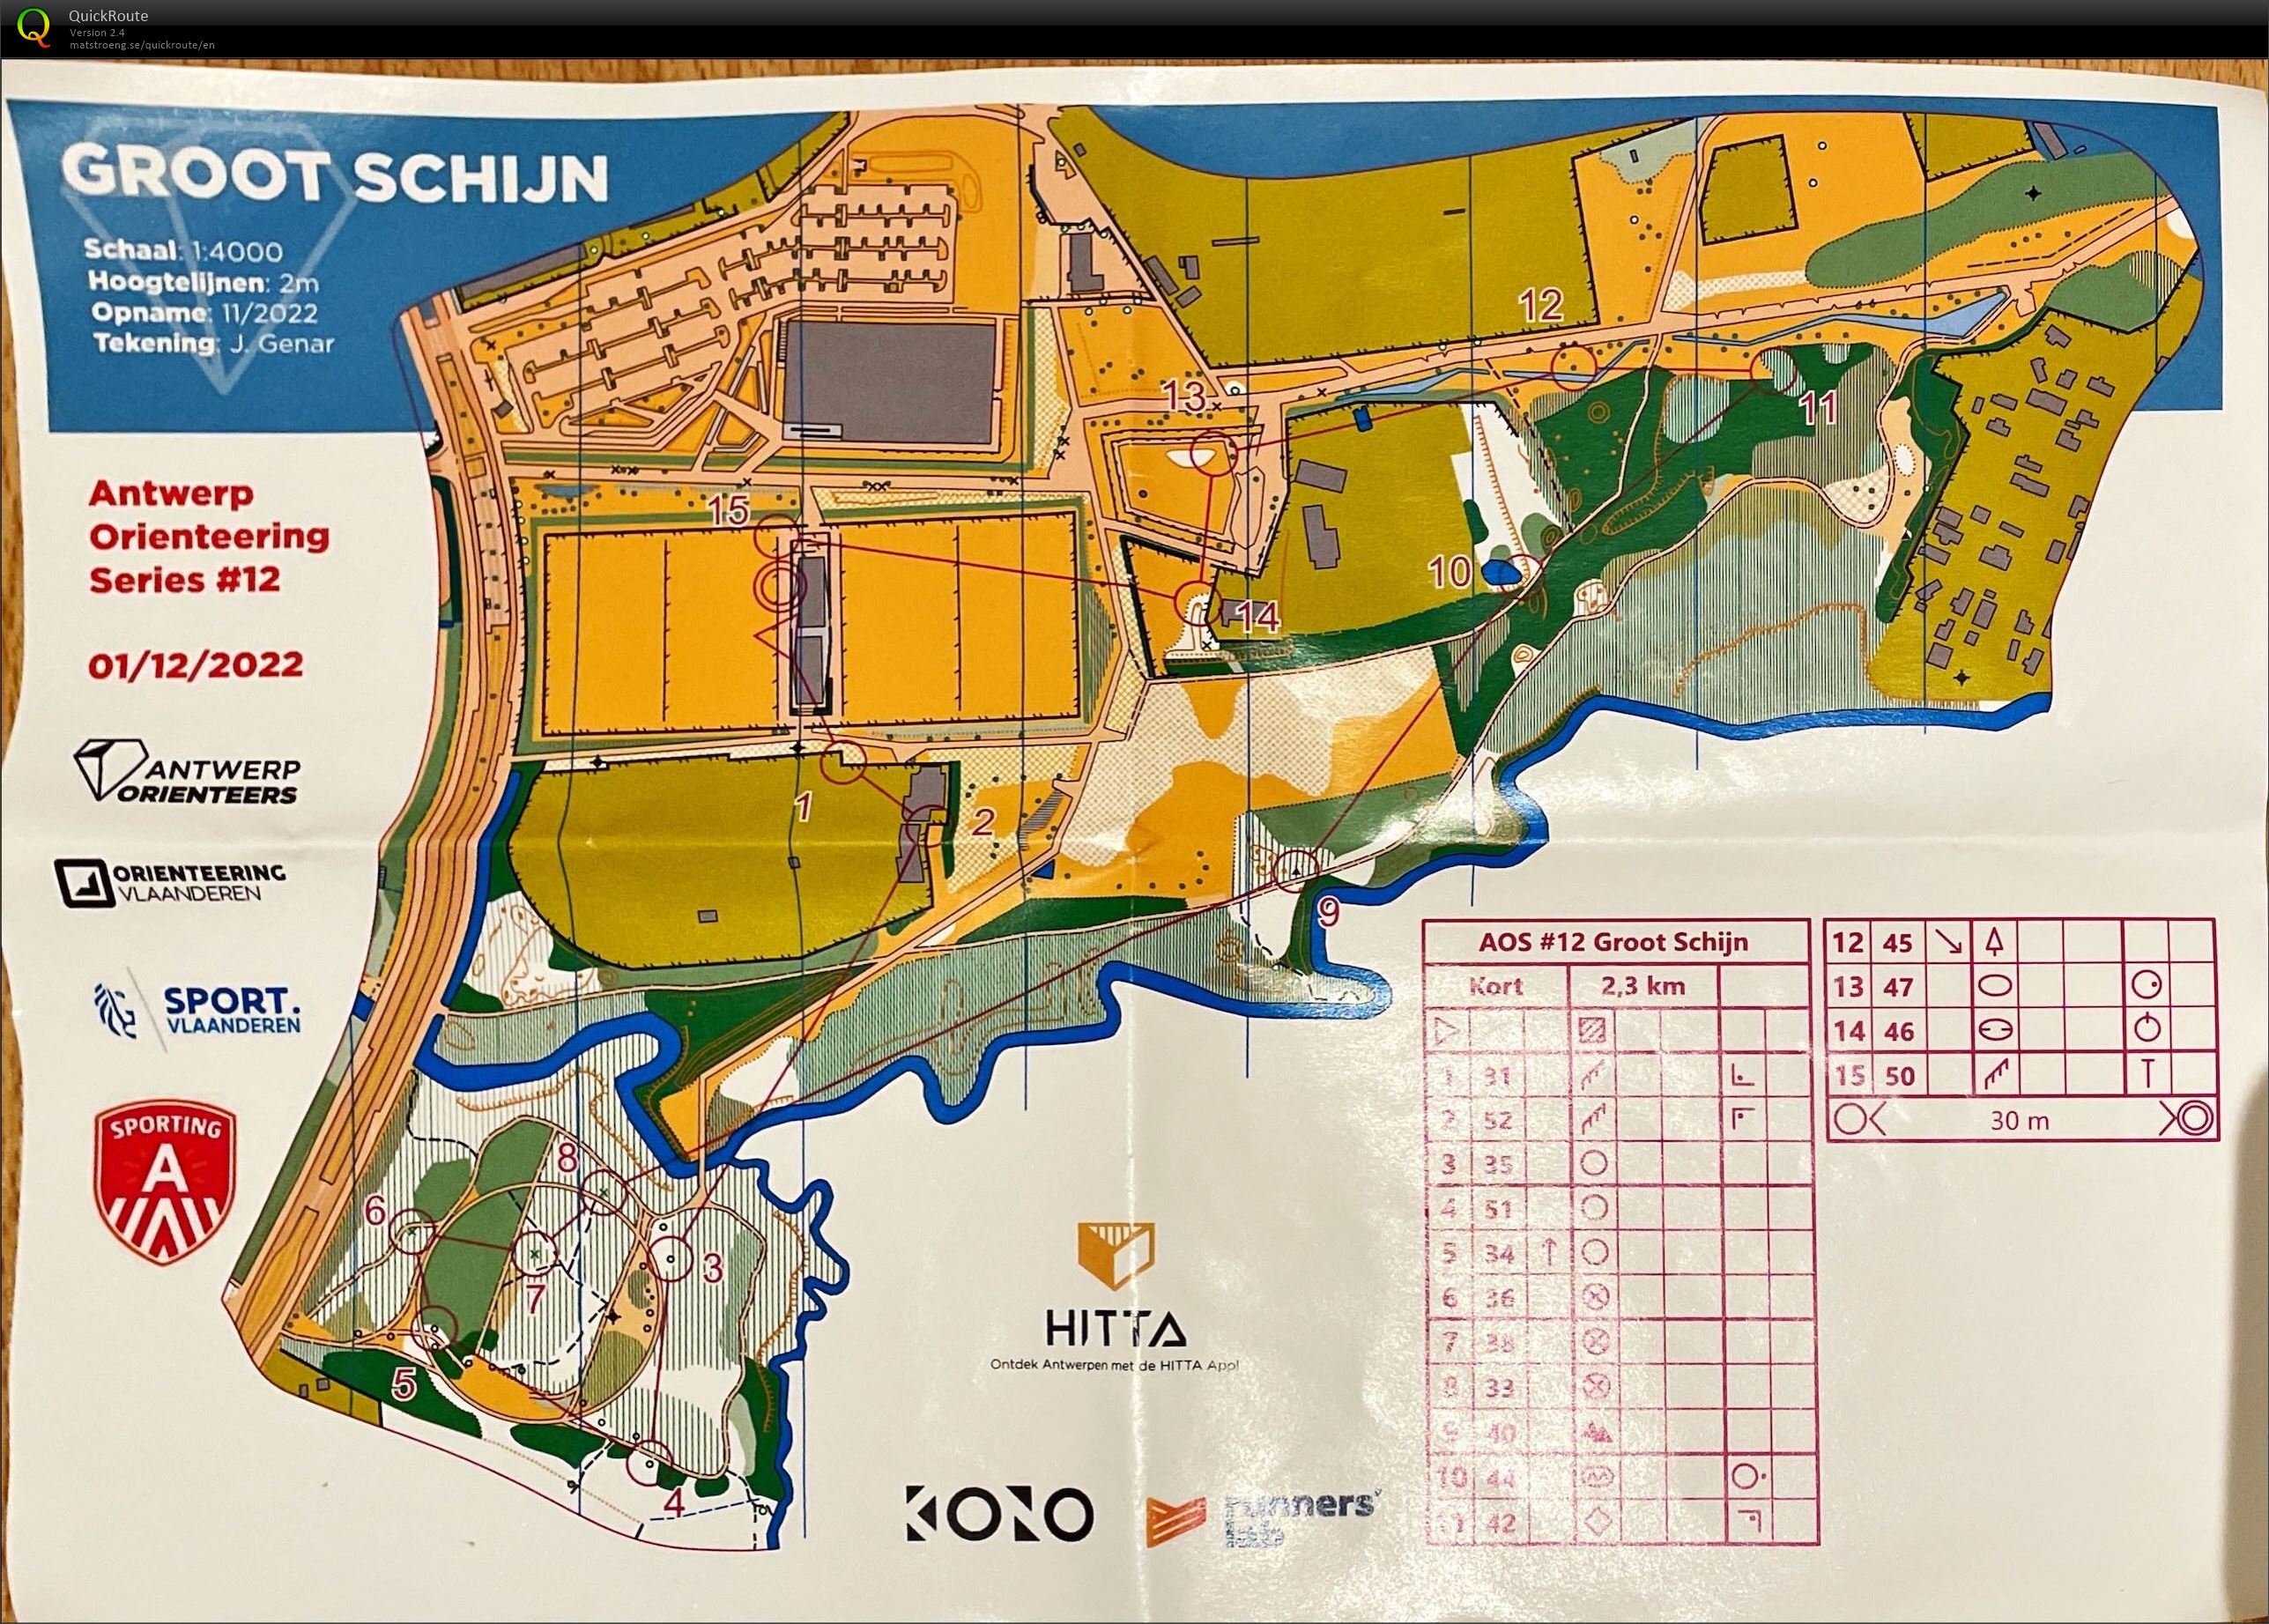 Antwerp Orienteering Series - Groot Schijn - Kort (01/12/2022)